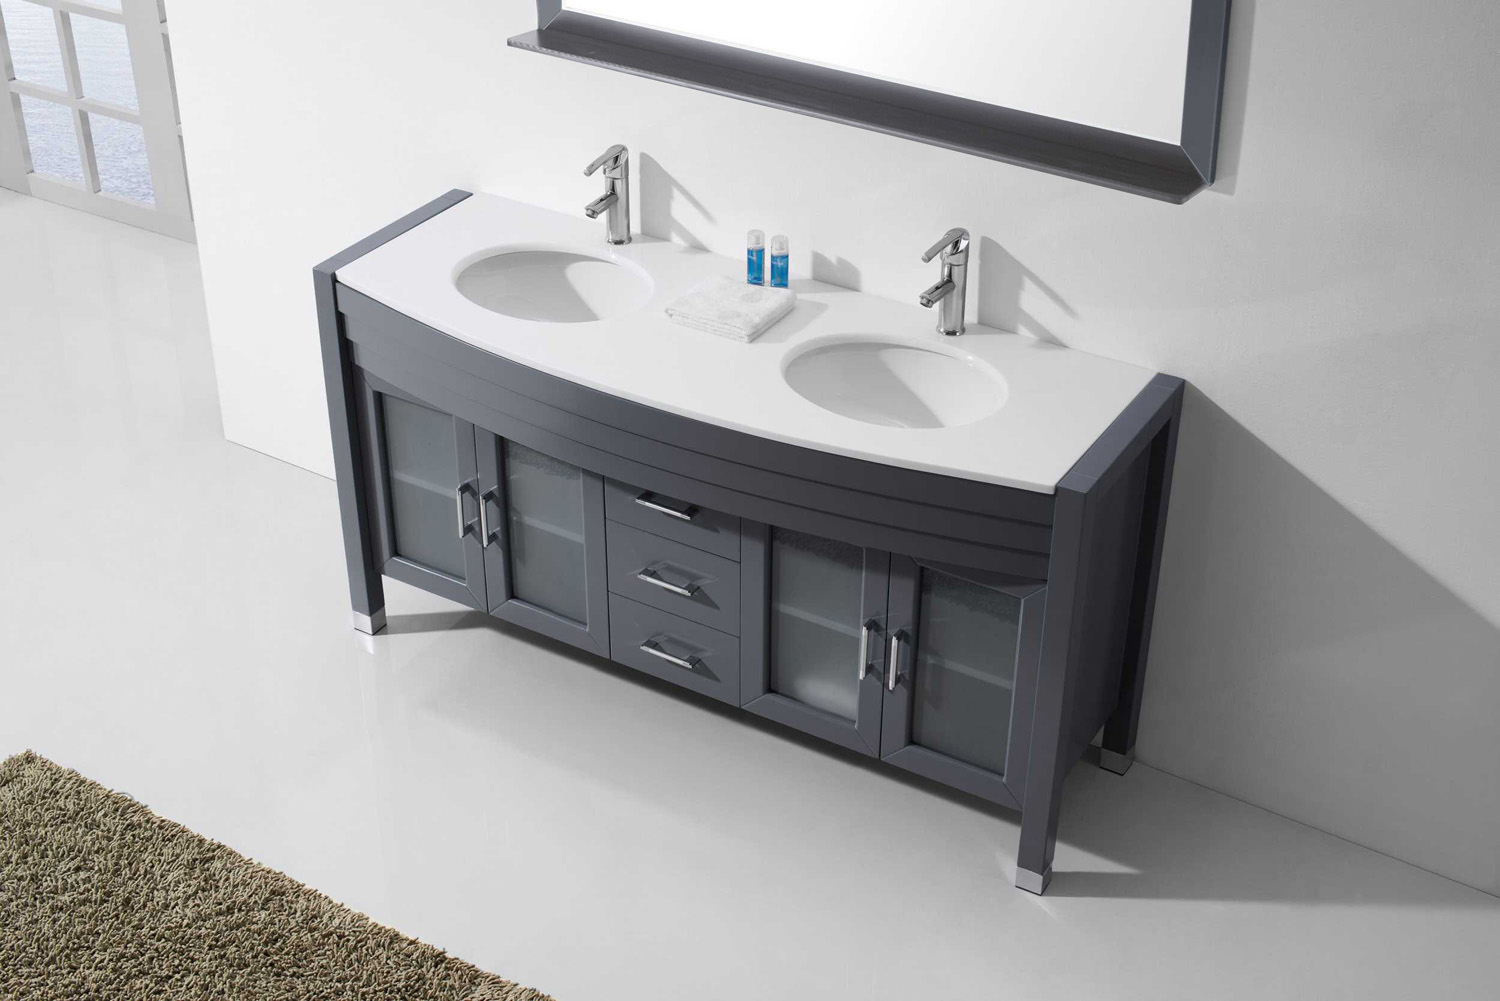 Double and single bathroom vanity sinks